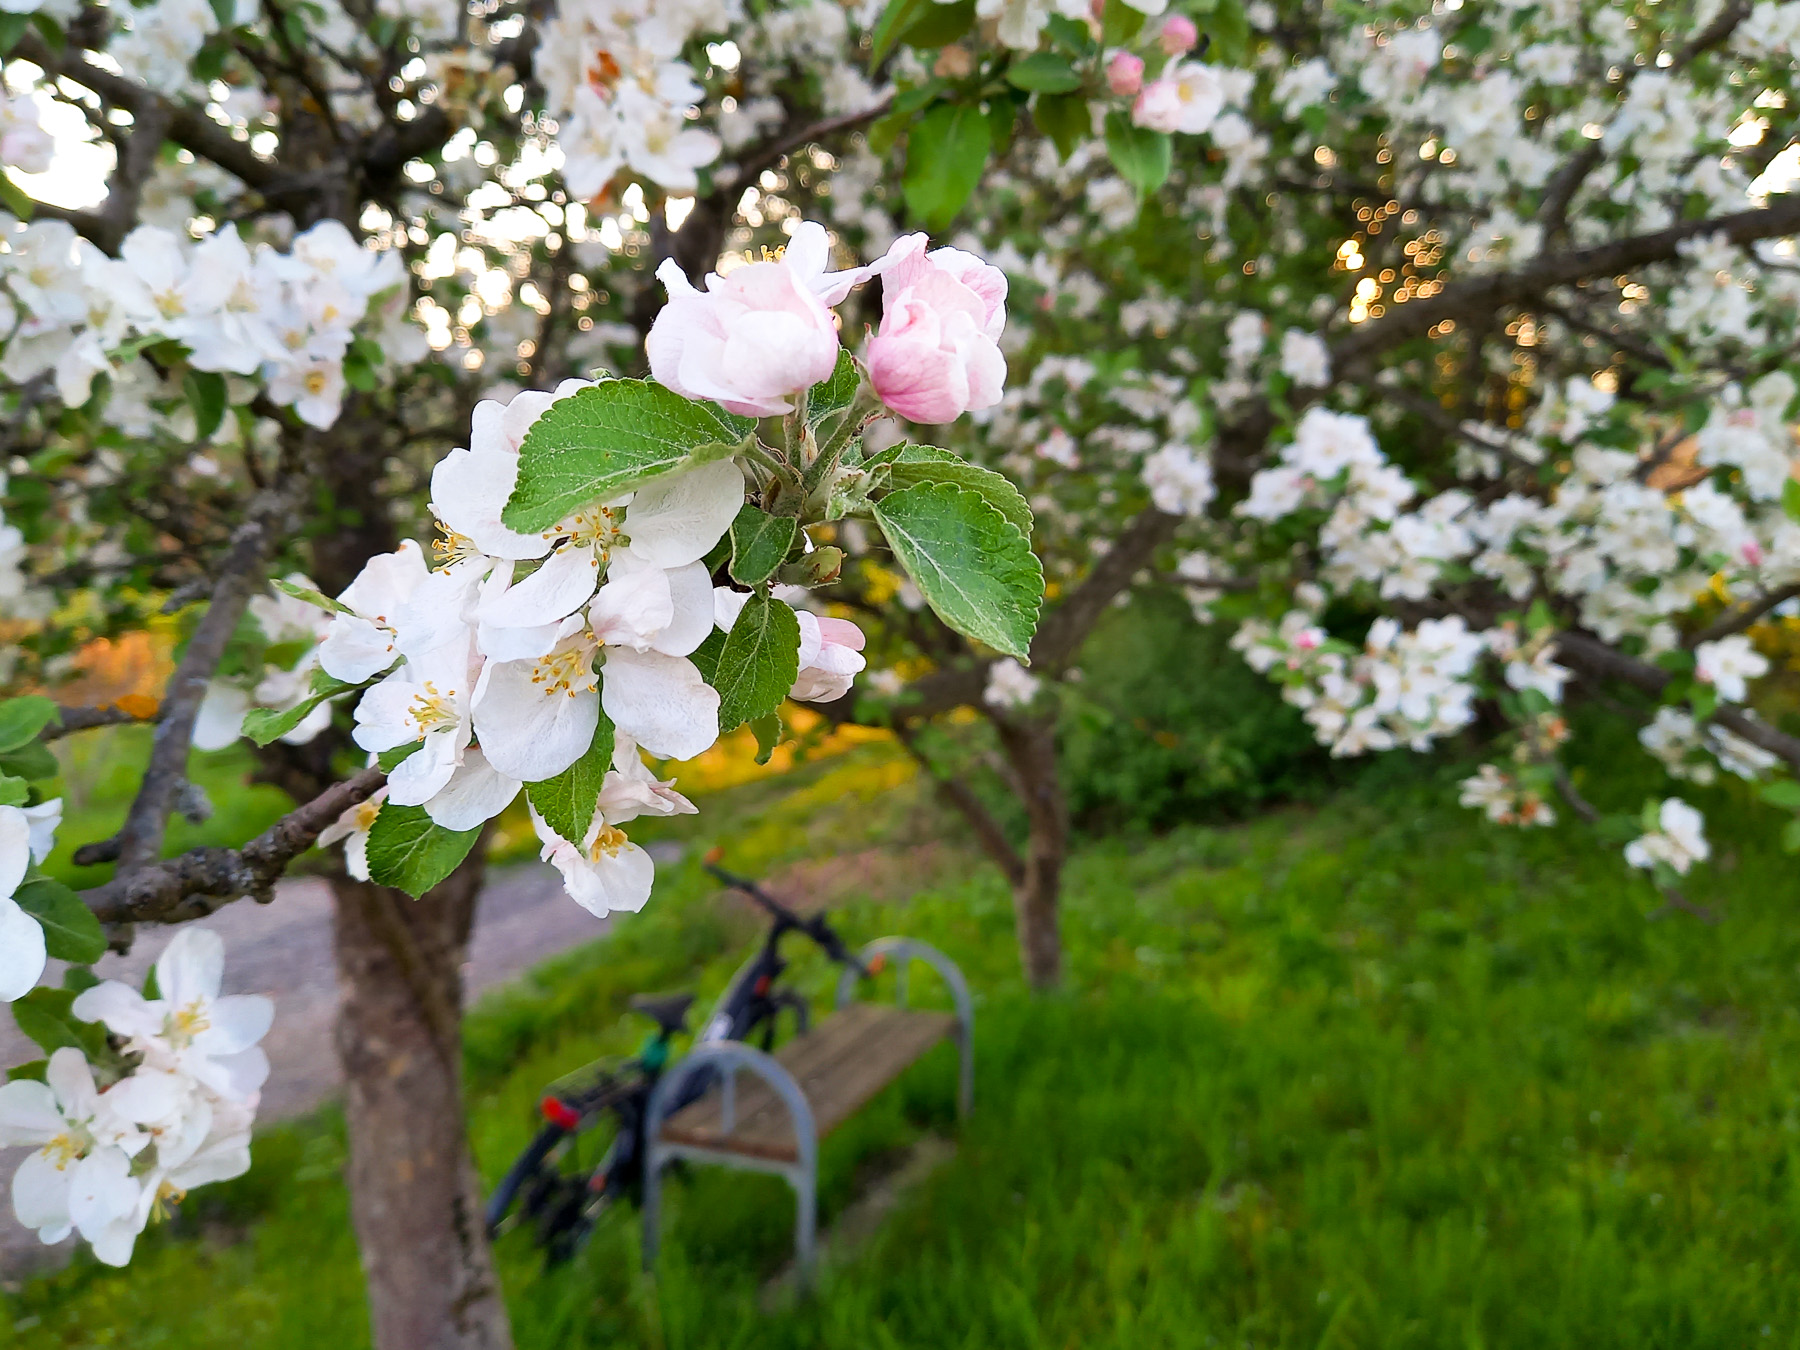 E-Bike lehnt unter blühendem Apfelbaum an einer Bank